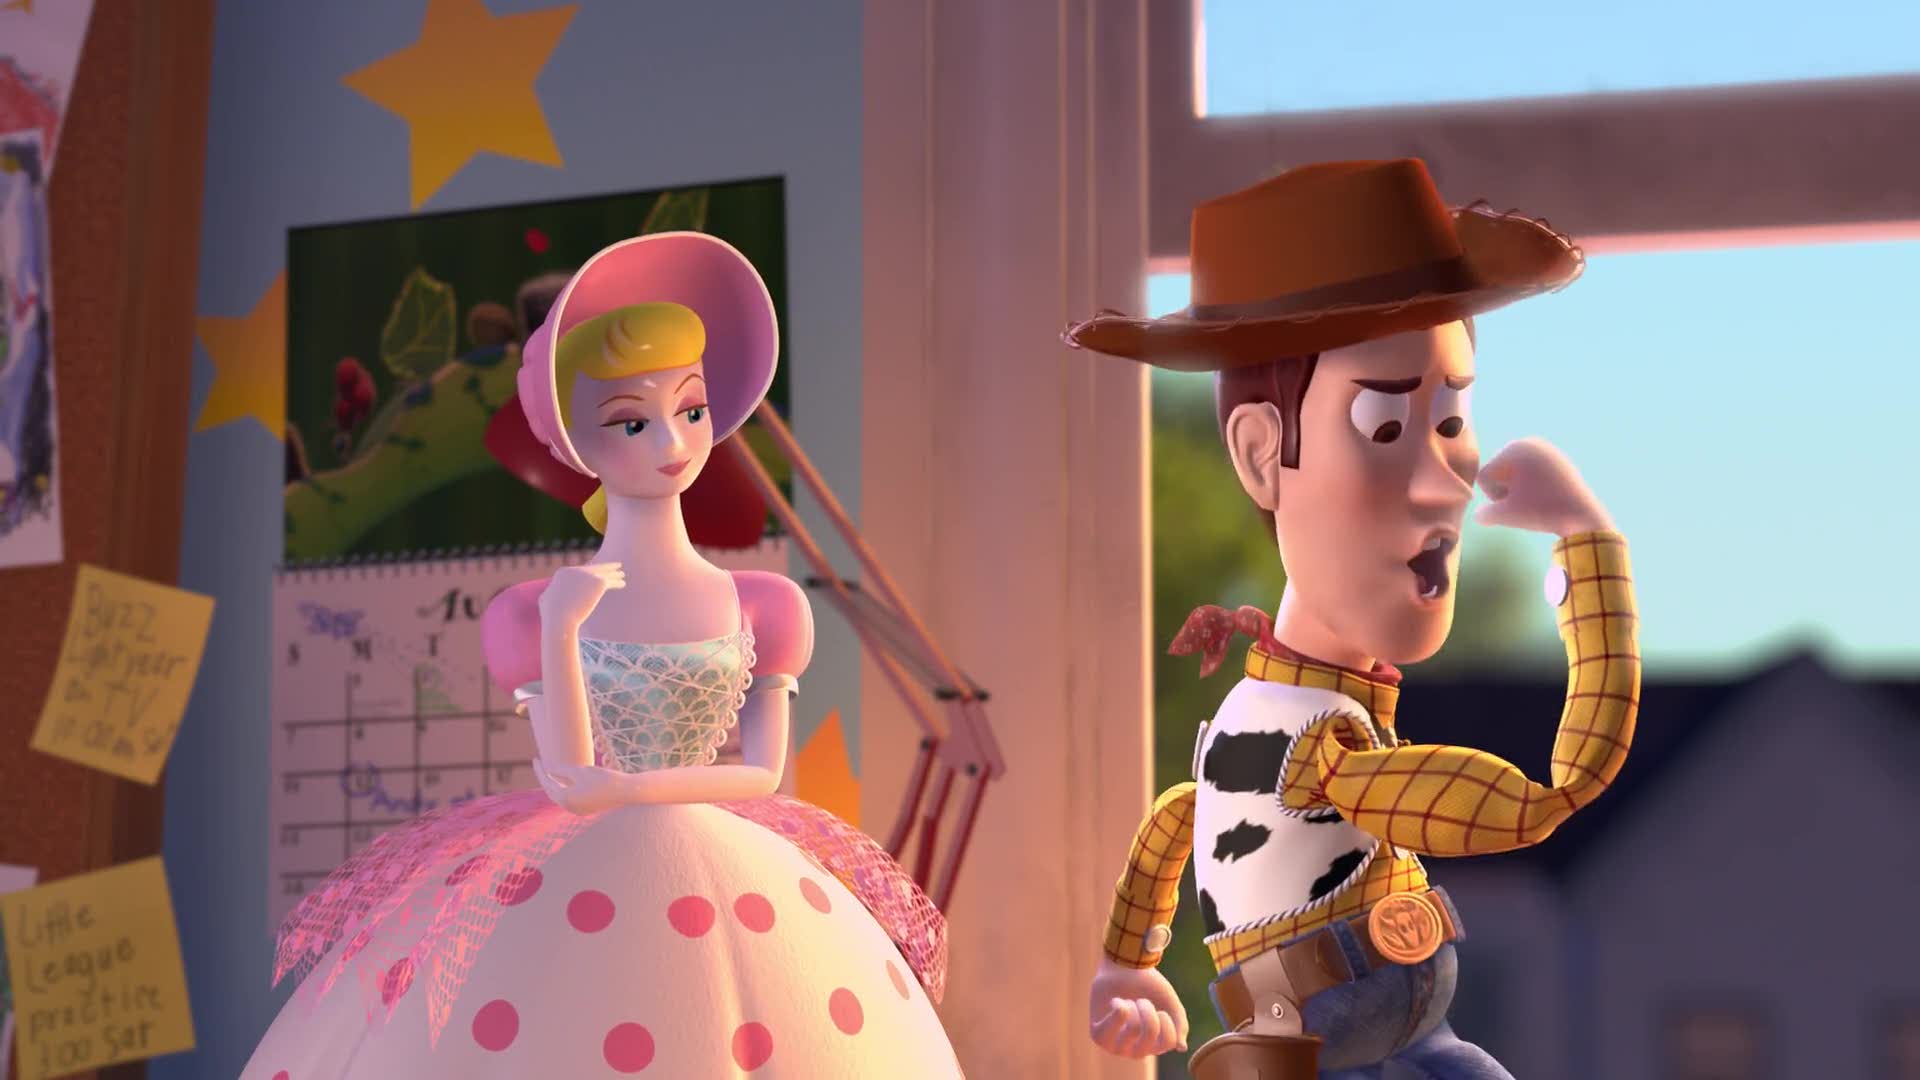 Toy Story 4 Cinematographe.it